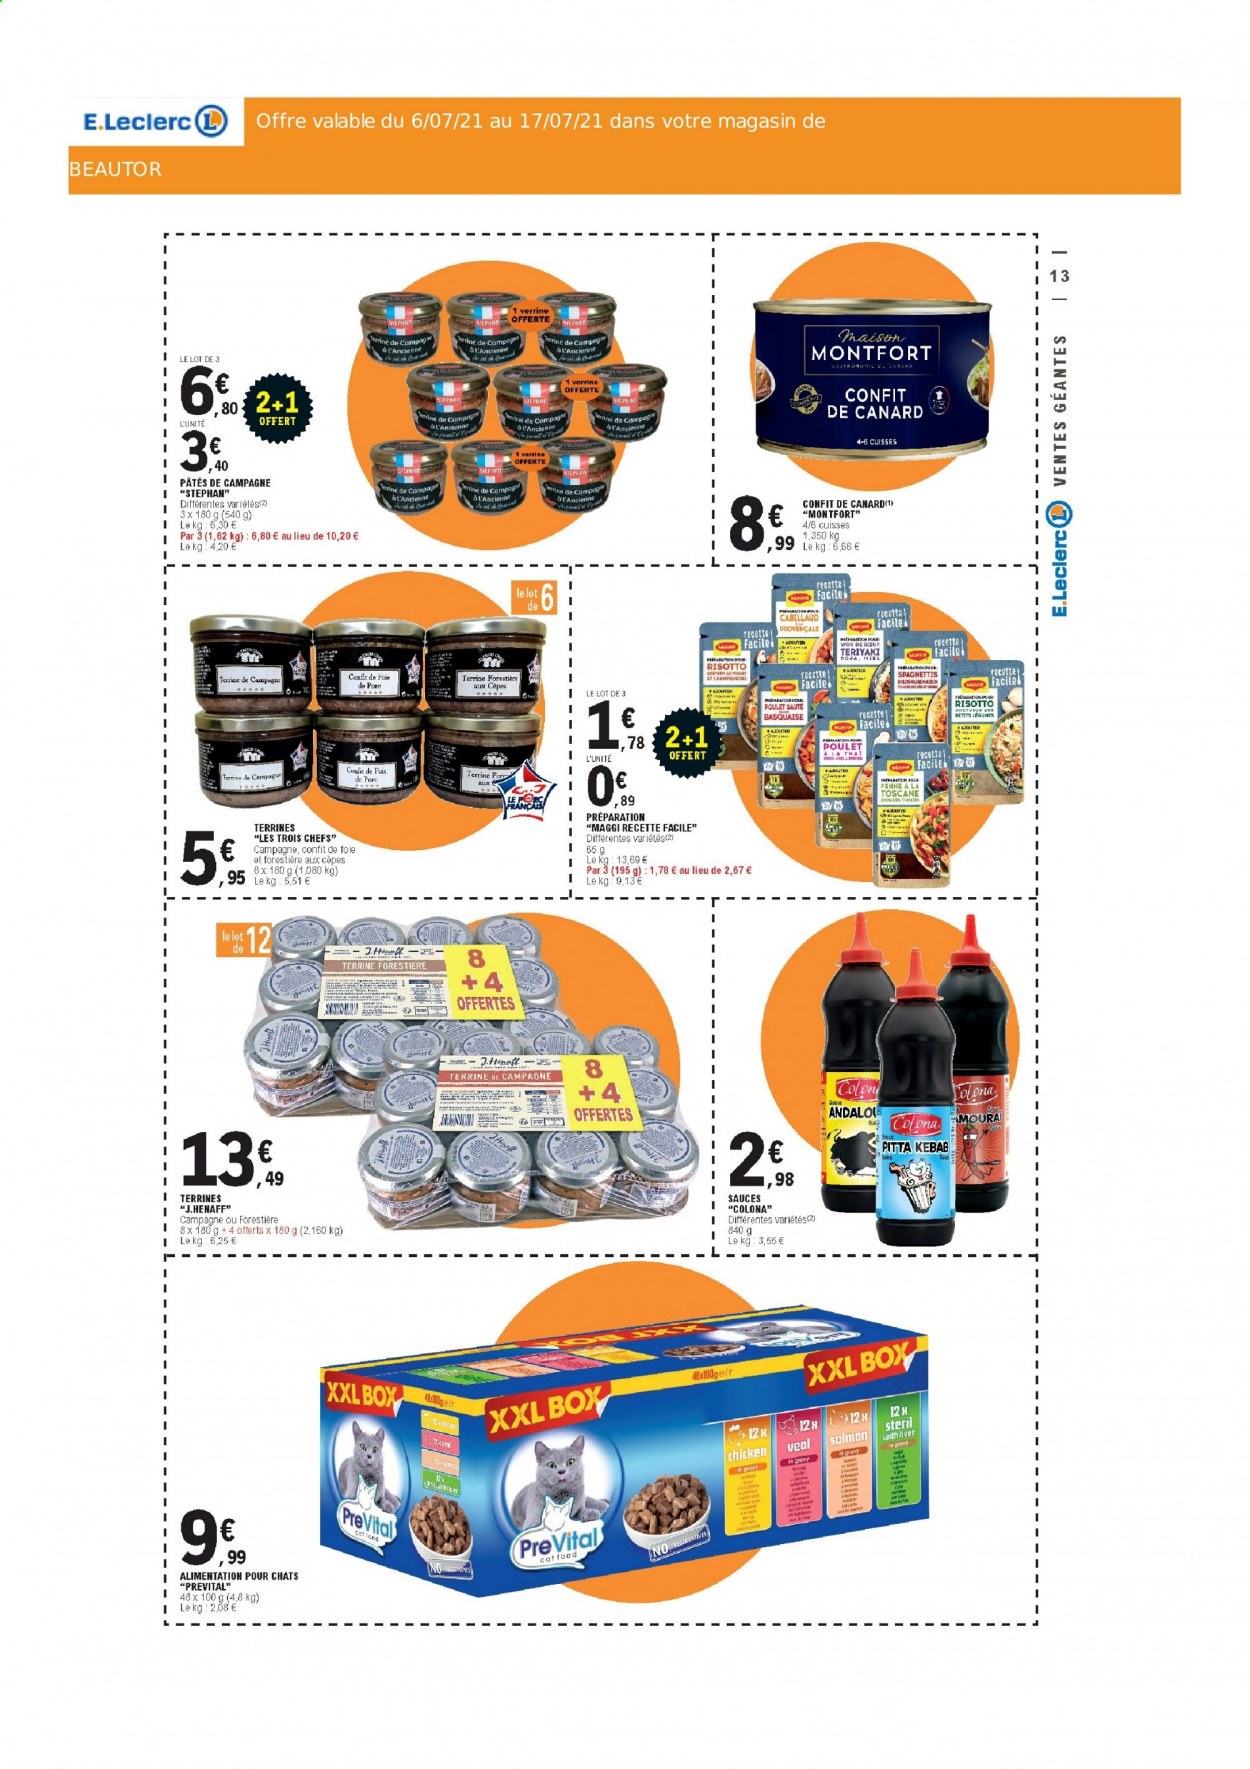 thumbnail - Catalogue E.Leclerc - 06/07/2021 - 17/07/2021 - Produits soldés - confit de canard, terrine, confit de foie, sel, soja, pâtes, miel, repas pour chat, PreVital, maison. Page 13.